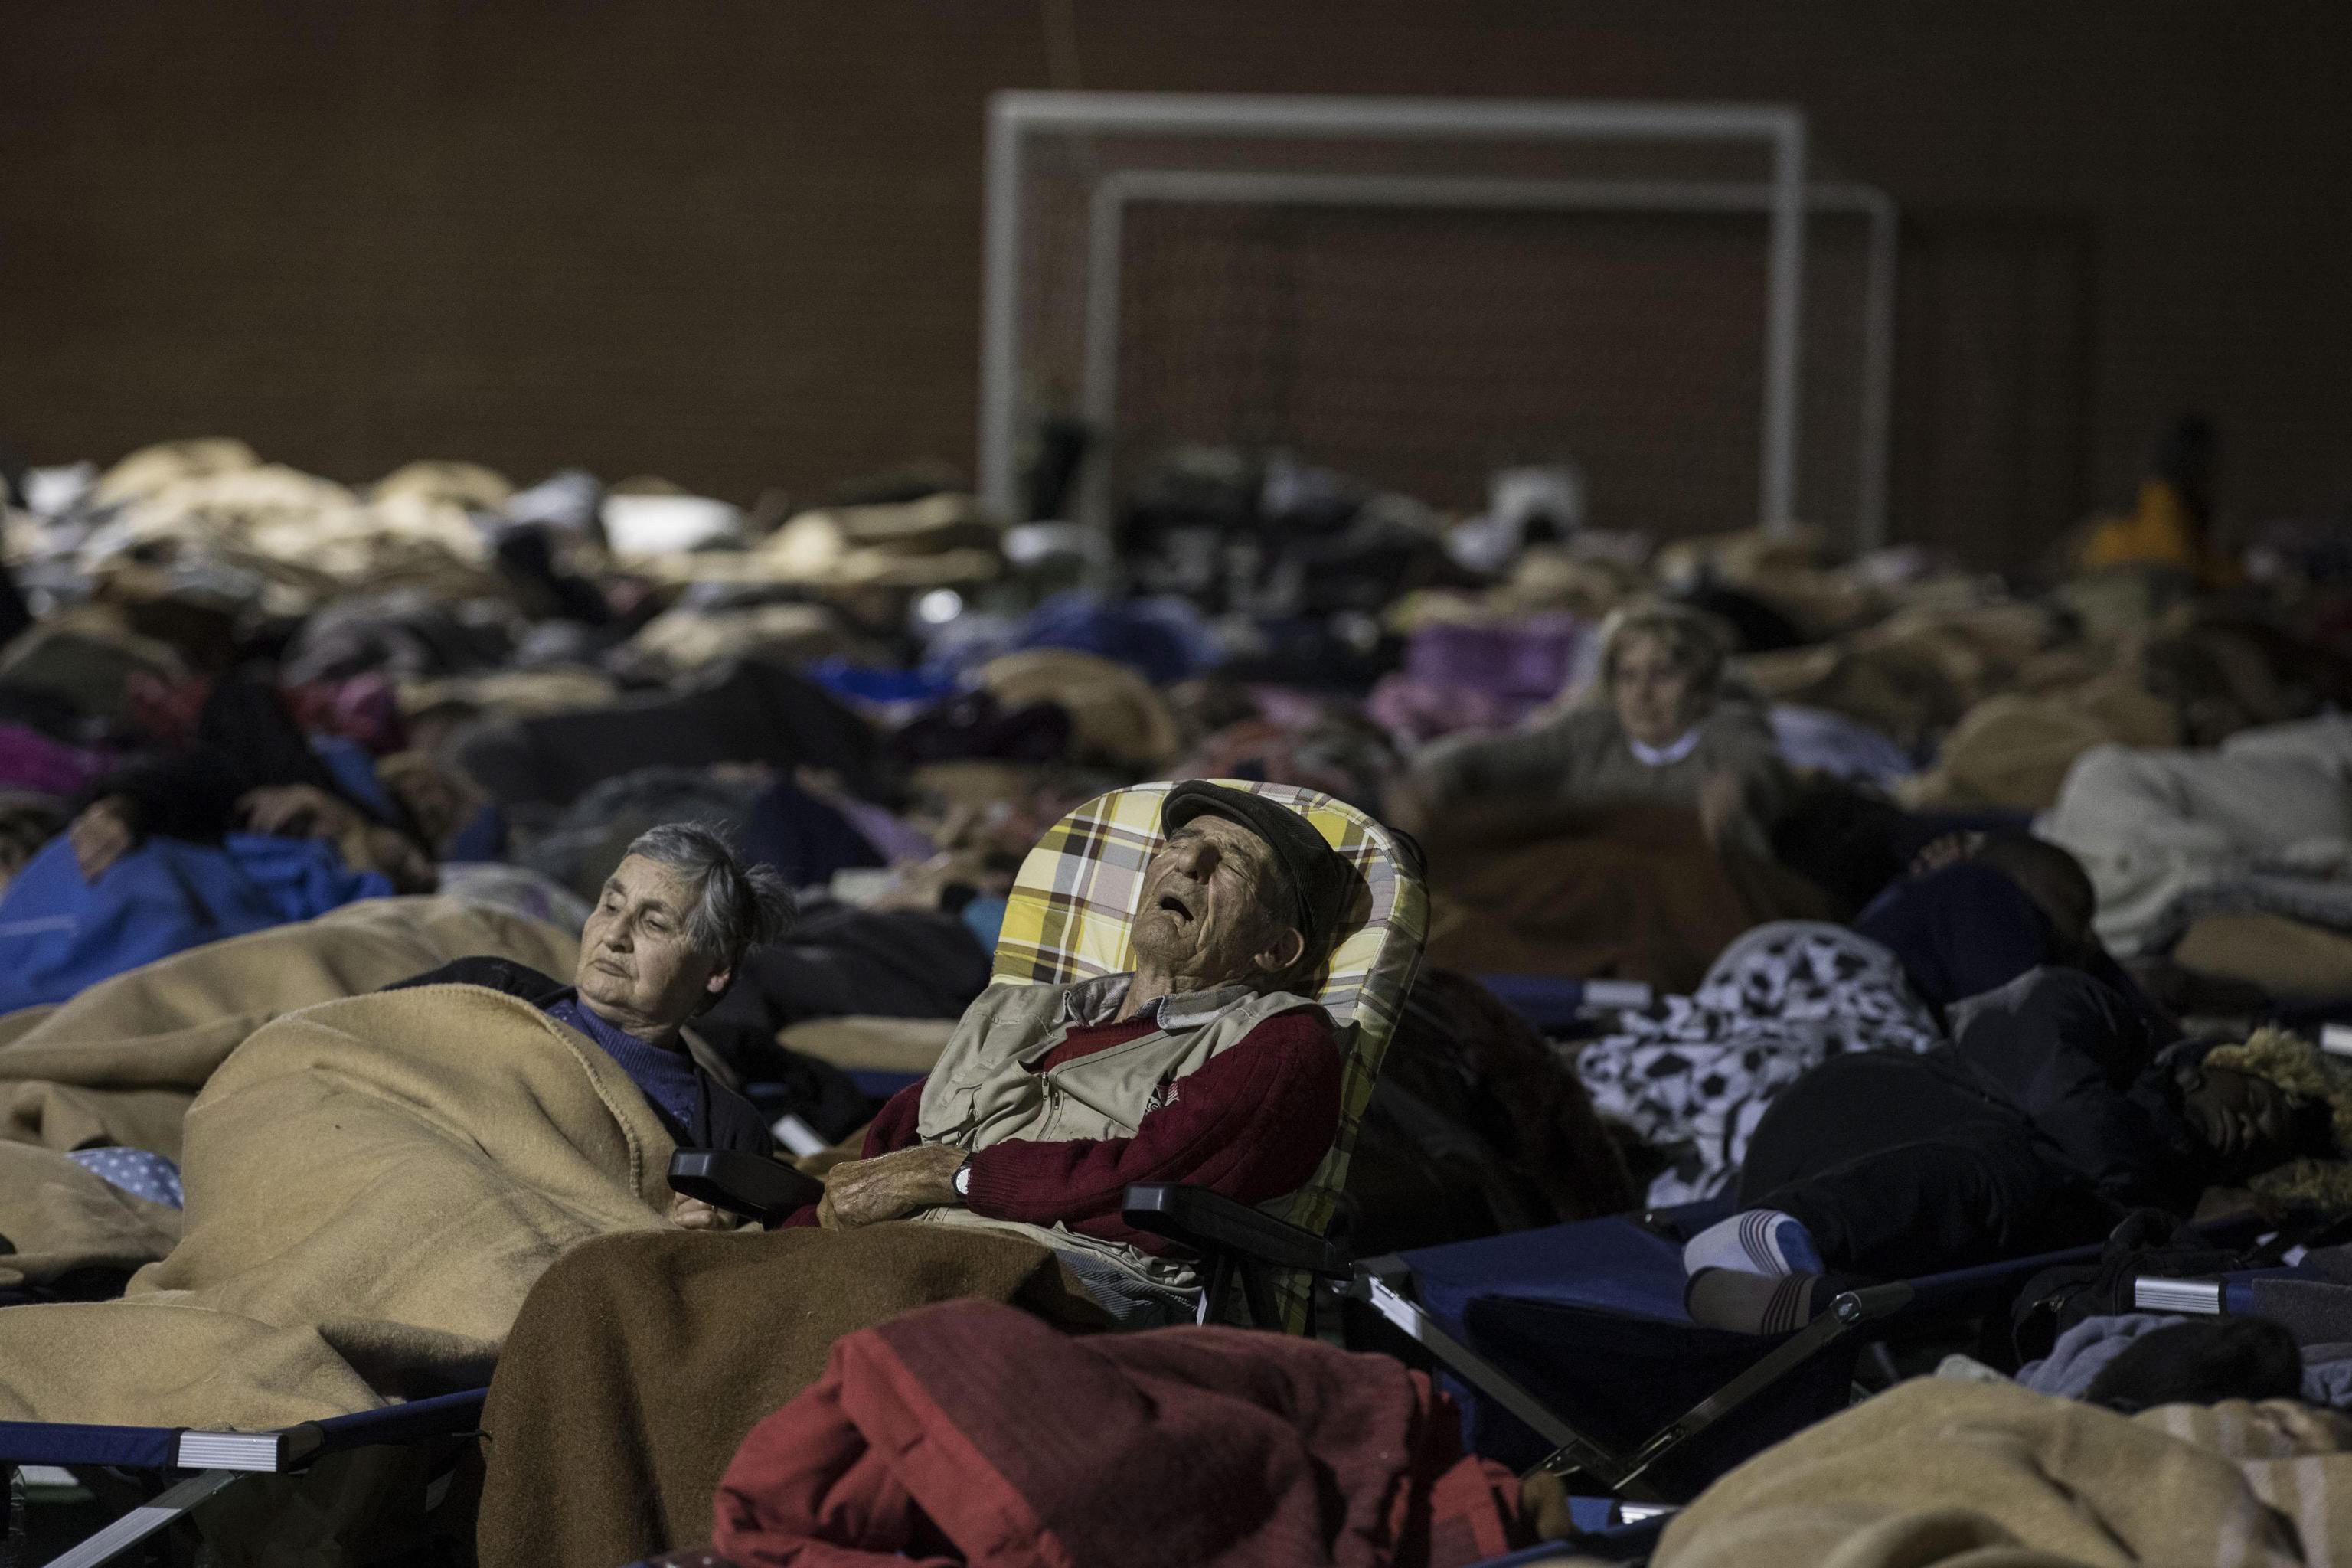 Η γη σείεται ακόμη στην Ιταλία, σε ξενοδοχεία μεταφέρονται οι άστεγοι